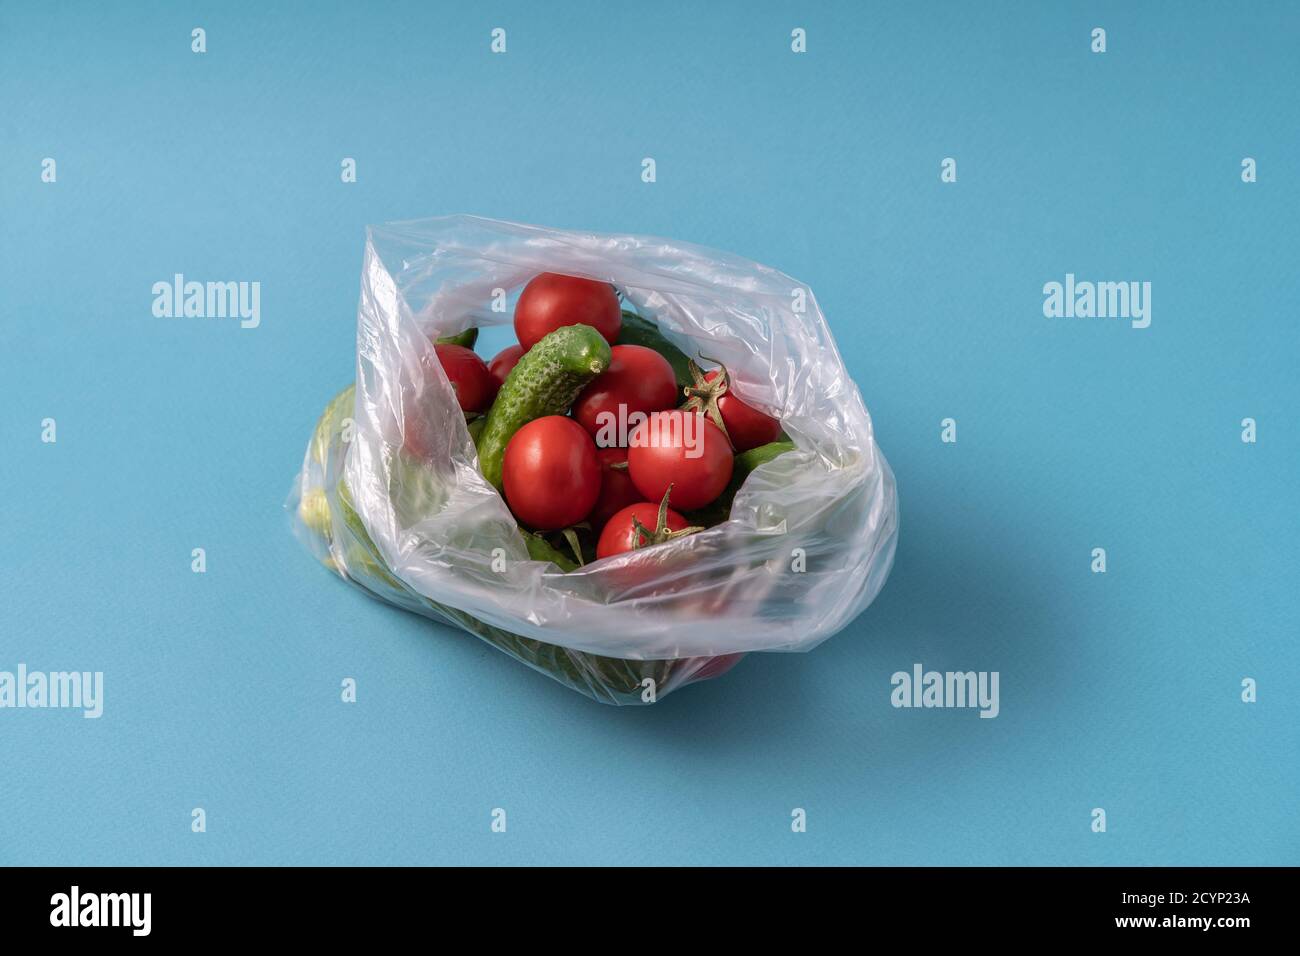 Vue avant concombres et tomates dans un sac en plastique sur fond bleu. L'image montre la nocivité de l'utilisation de sacs de stockage d'aliments artificiels. Image horizontale Banque D'Images